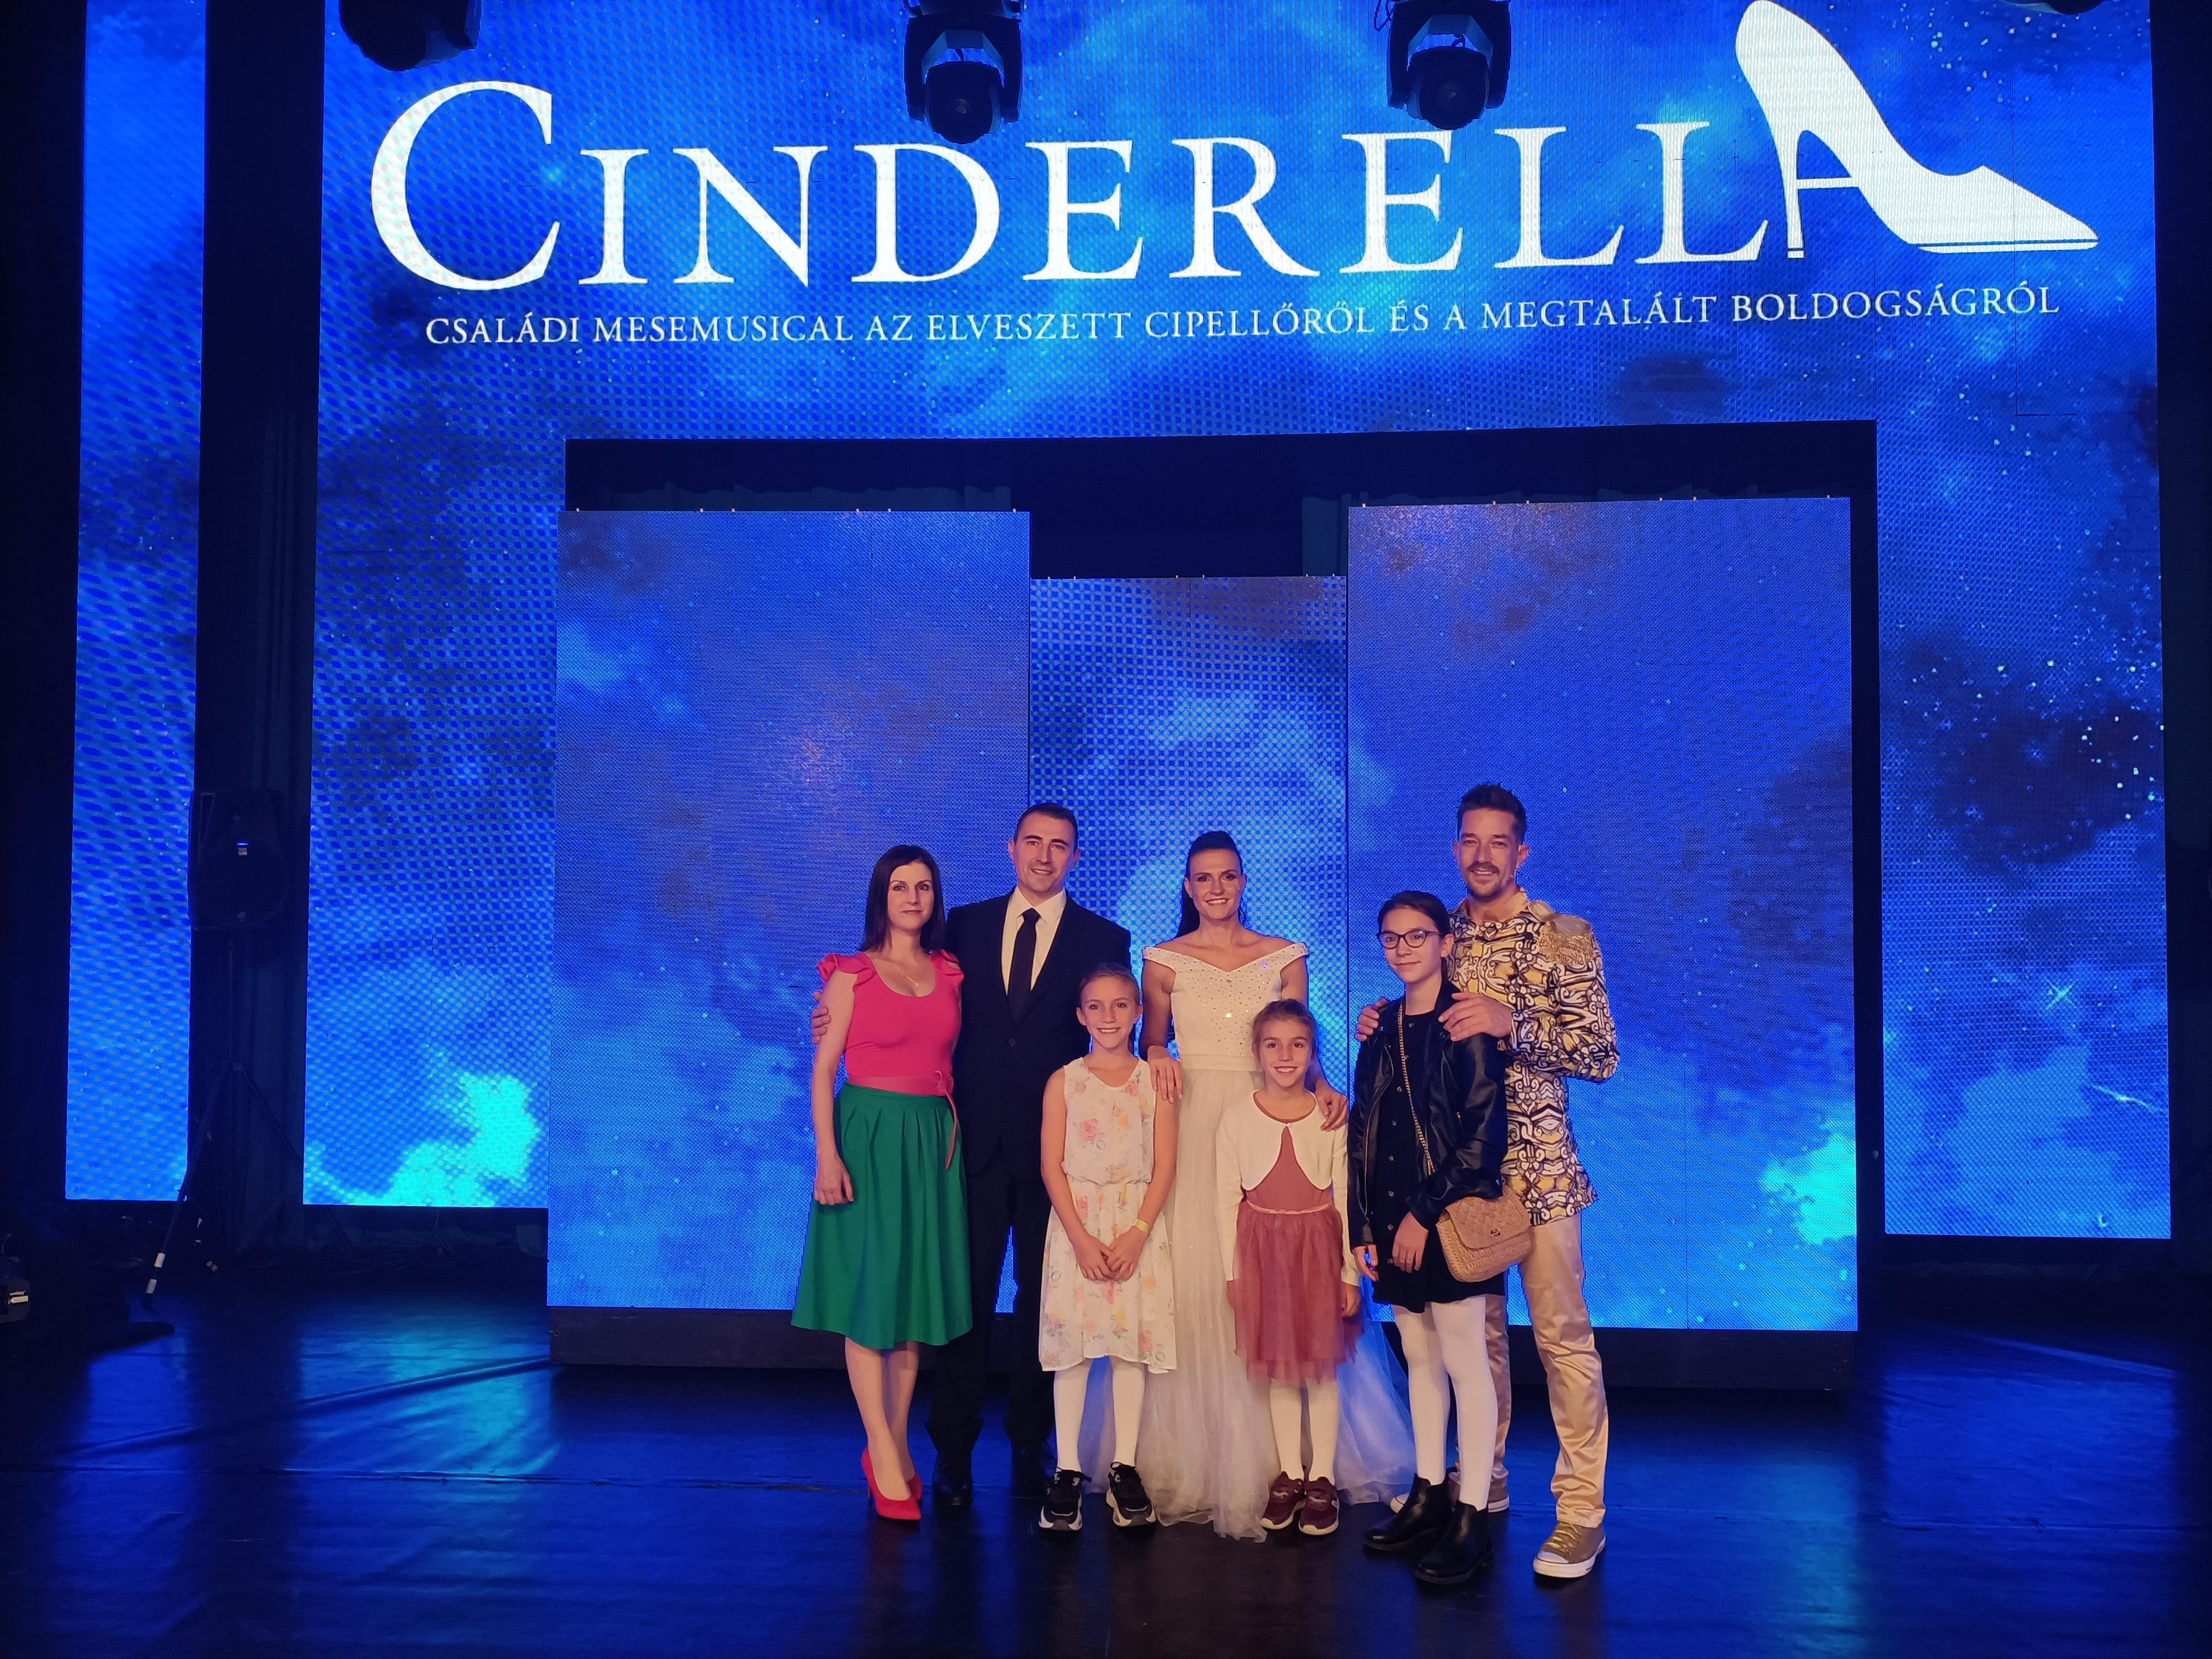 Október 22-én nagy sikerrel mutatkozott be Csepelen a Cinderella családi mesemusical a TBG és a Re-Production